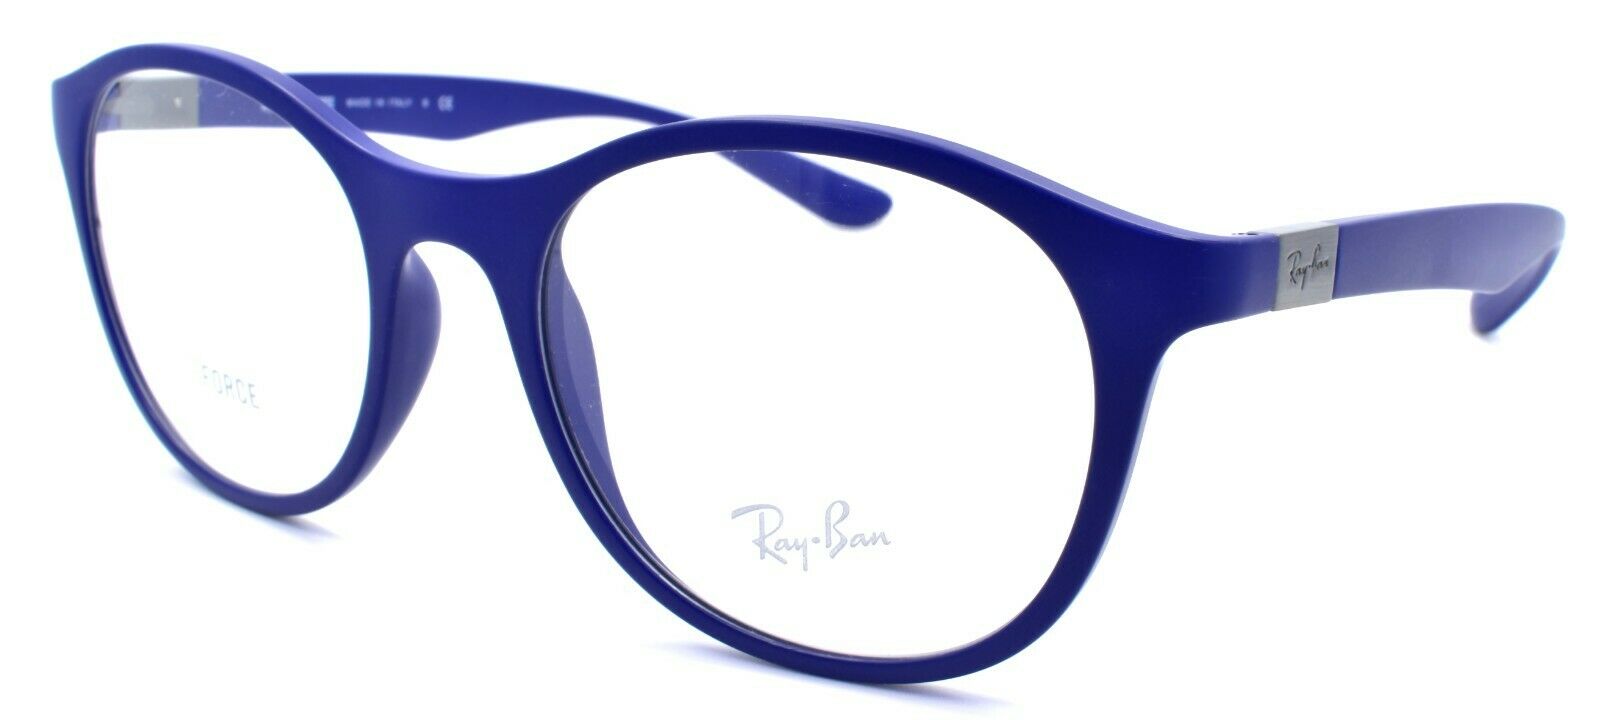 1-Ray-Ban RB7166 5207 Liteforce Eyeglasses Frames 51-19-140 Blue-8056597063463-IKSpecs